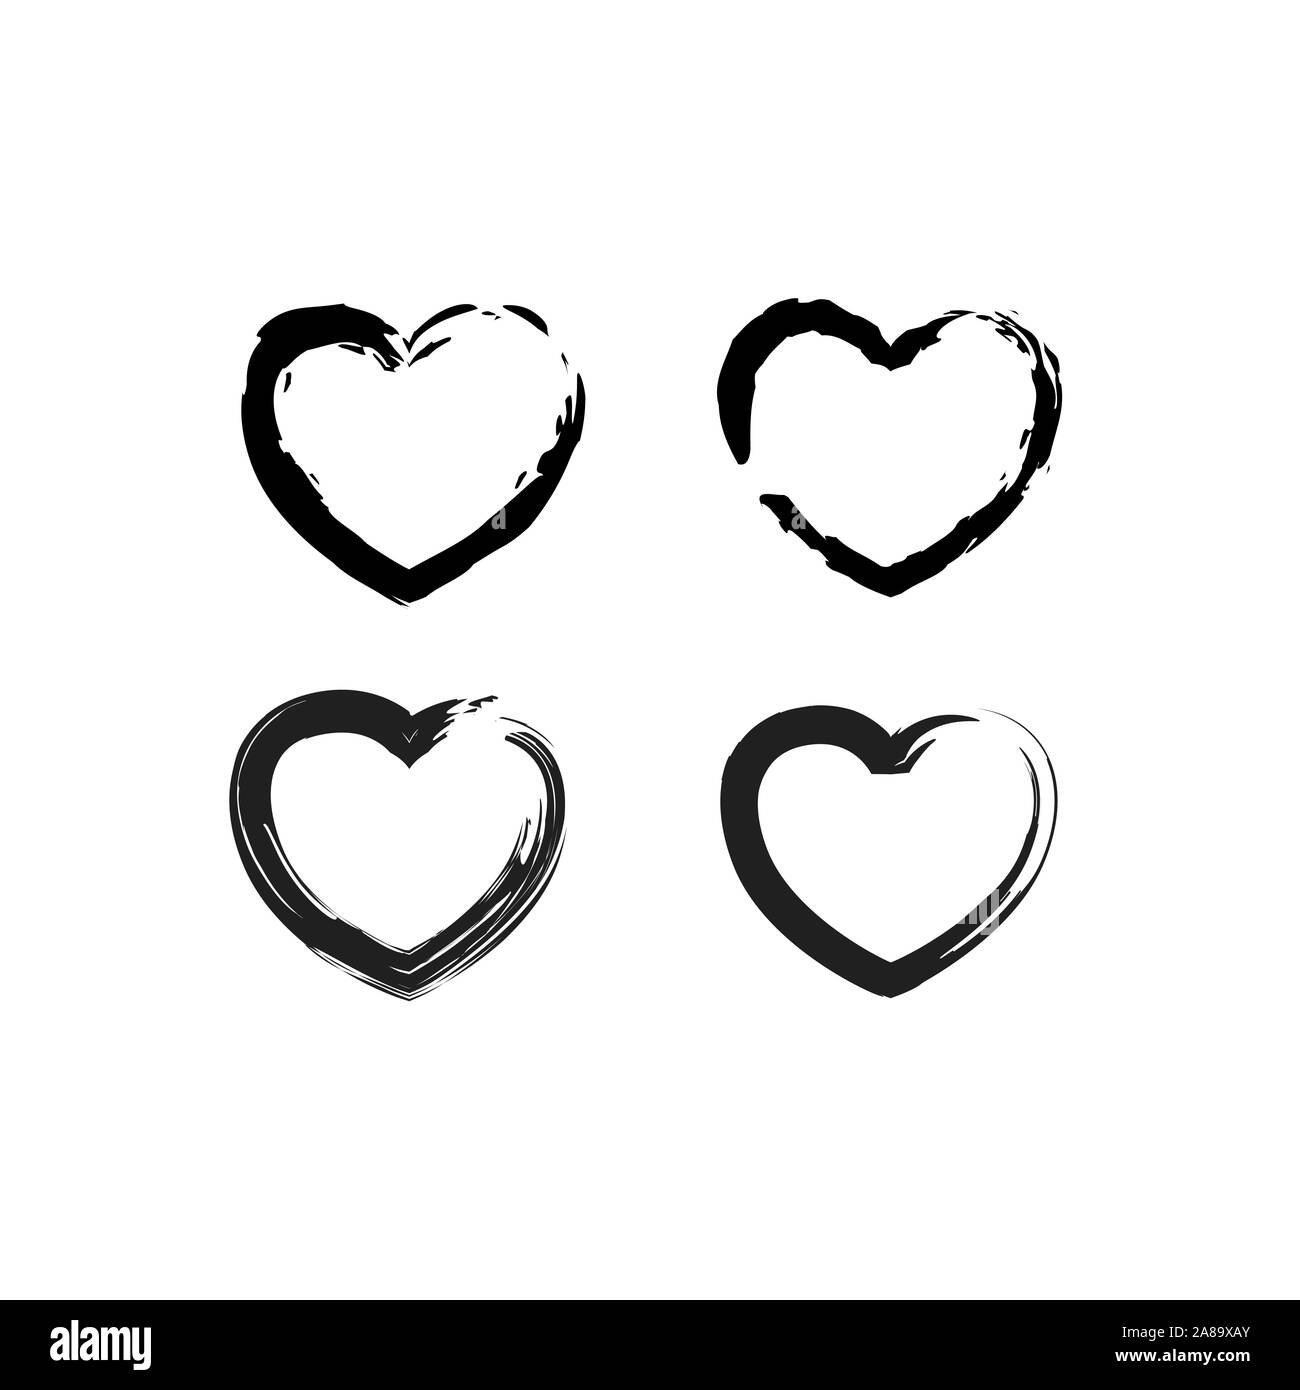 Pinselstrich Grunge Herzen Vector eingestellt. Süße schwarze Herz Icons Sammlung isoliert auf Weiss. Liebe Symbol Vektor Vorlage Stock Vektor